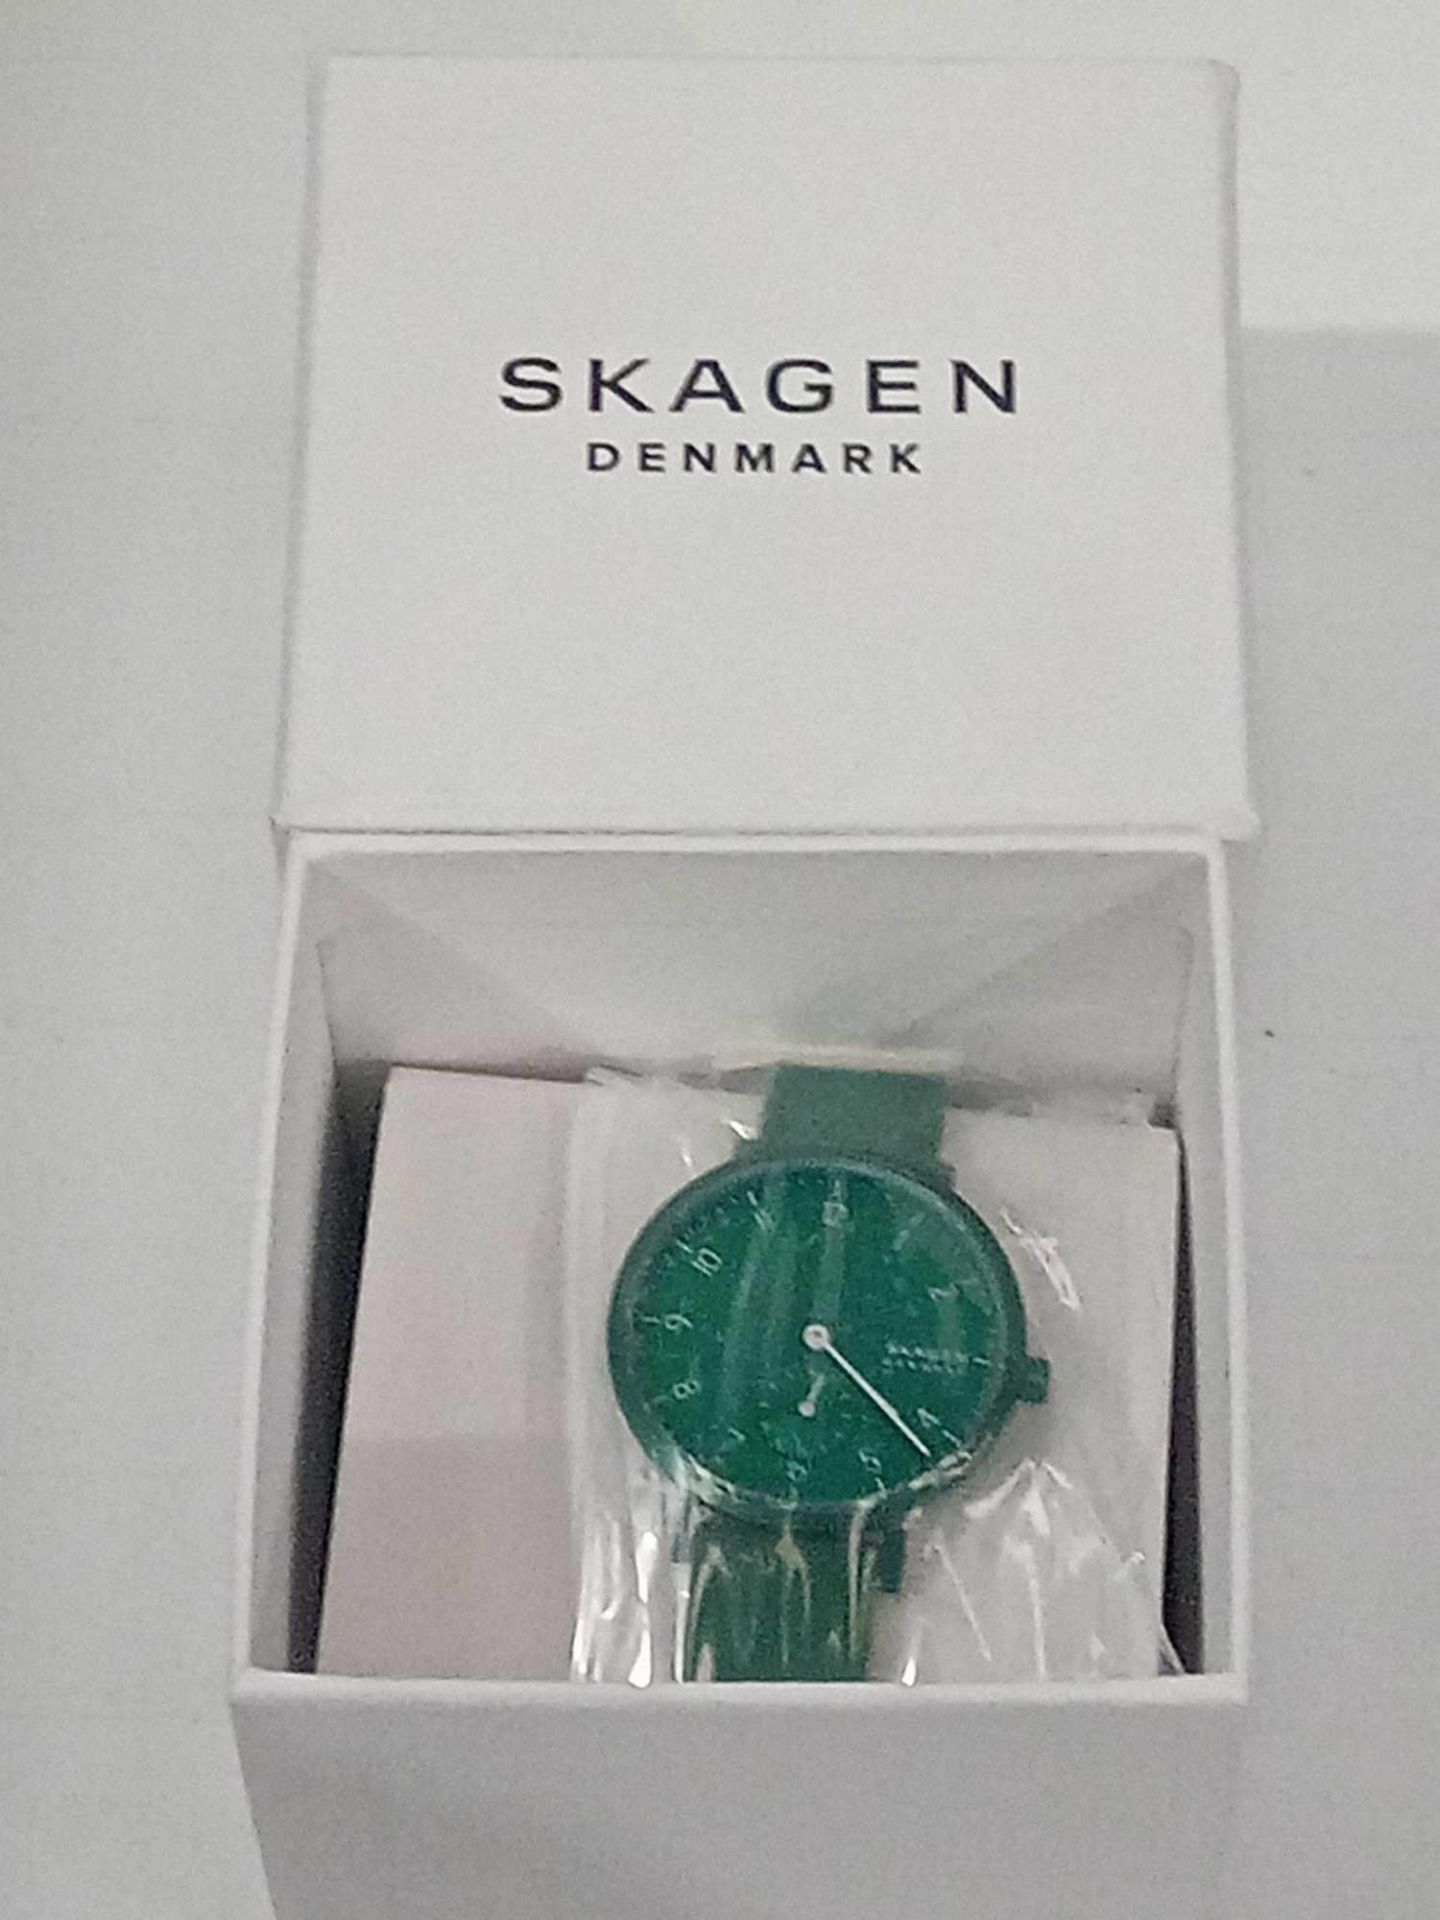 RRP £150 Boxed Skagen Denmark Green Wrist Watch - Image 2 of 3